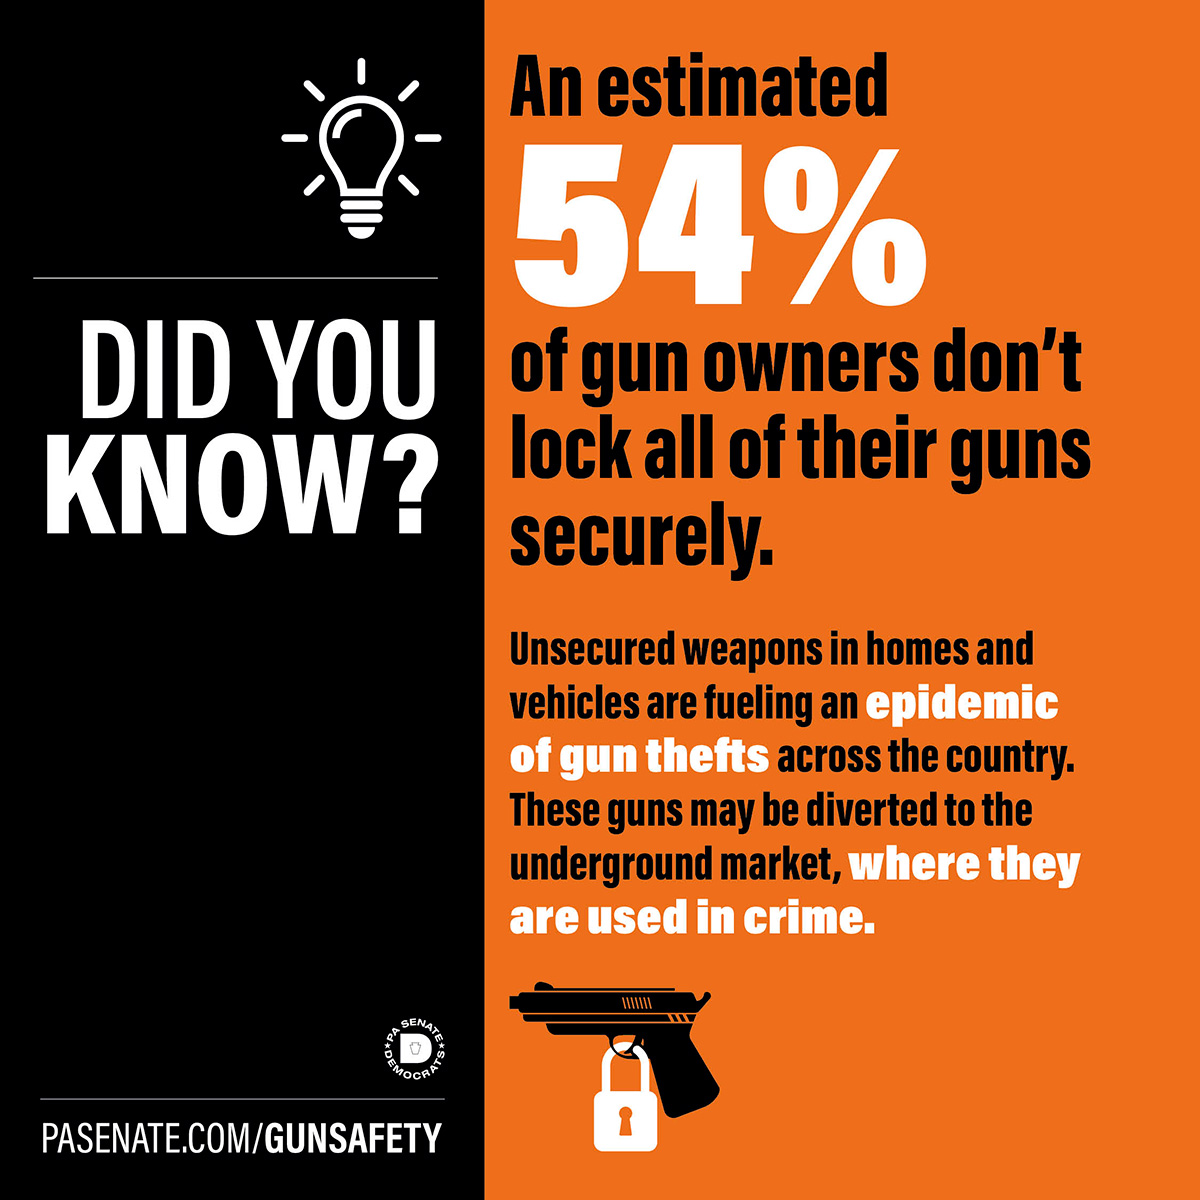 ¿Lo sabía? Se calcula que el 54% de los propietarios de armas no las guardan todas bajo llave.